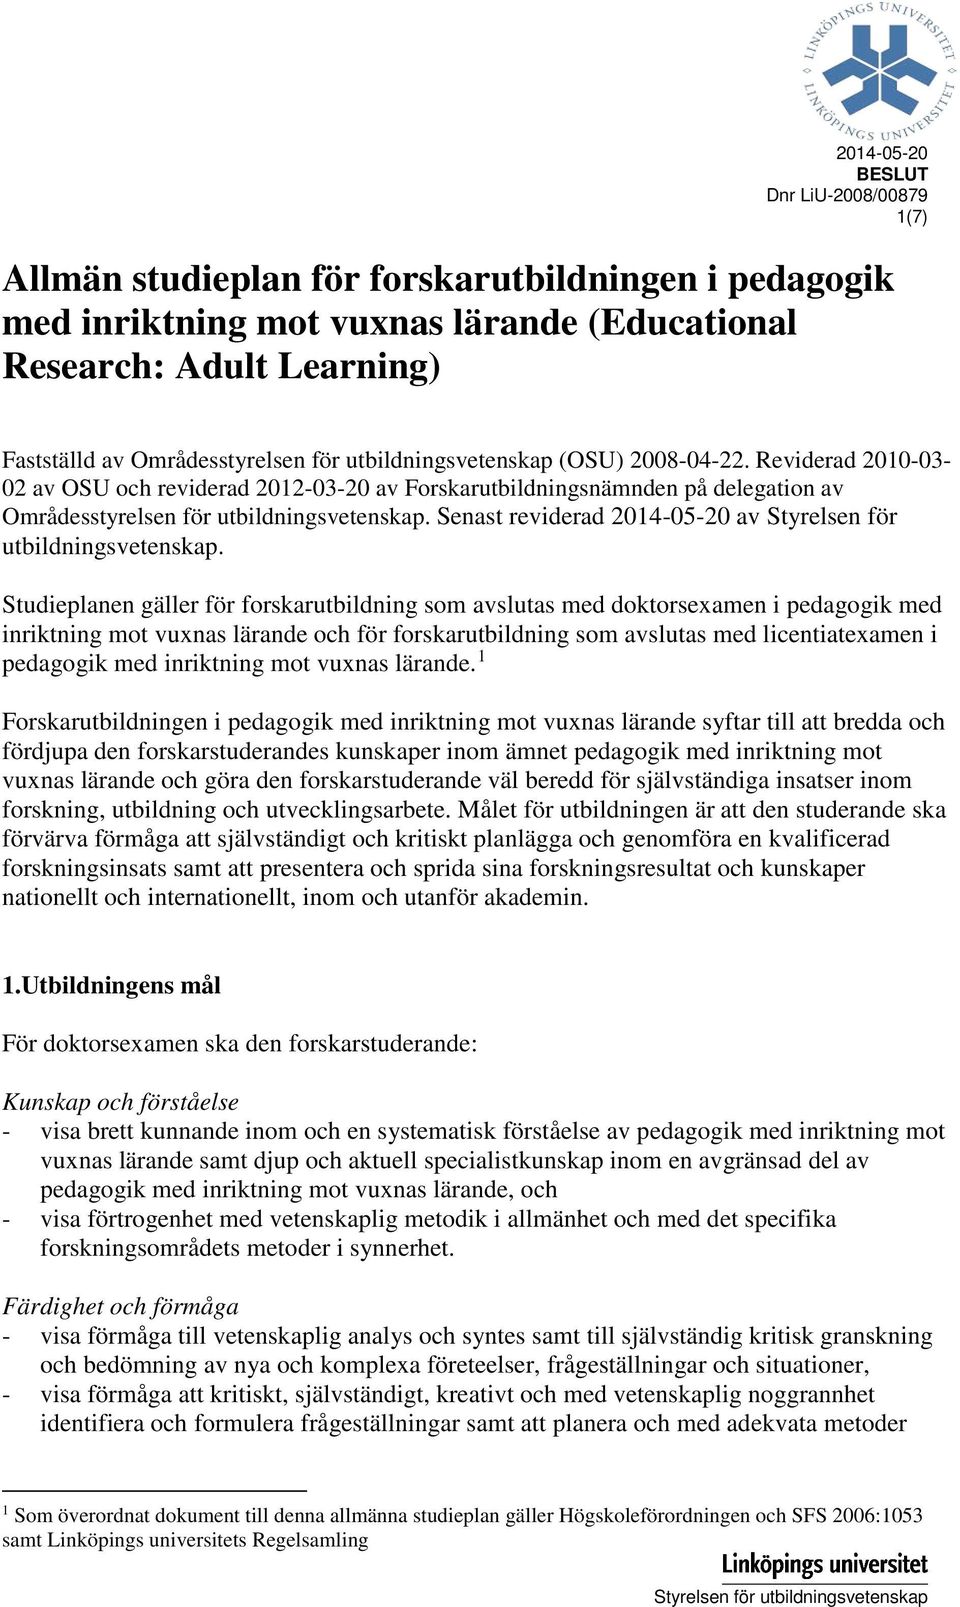 Senast reviderad 2014-05-20 av Styrelsen för utbildningsvetenskap.